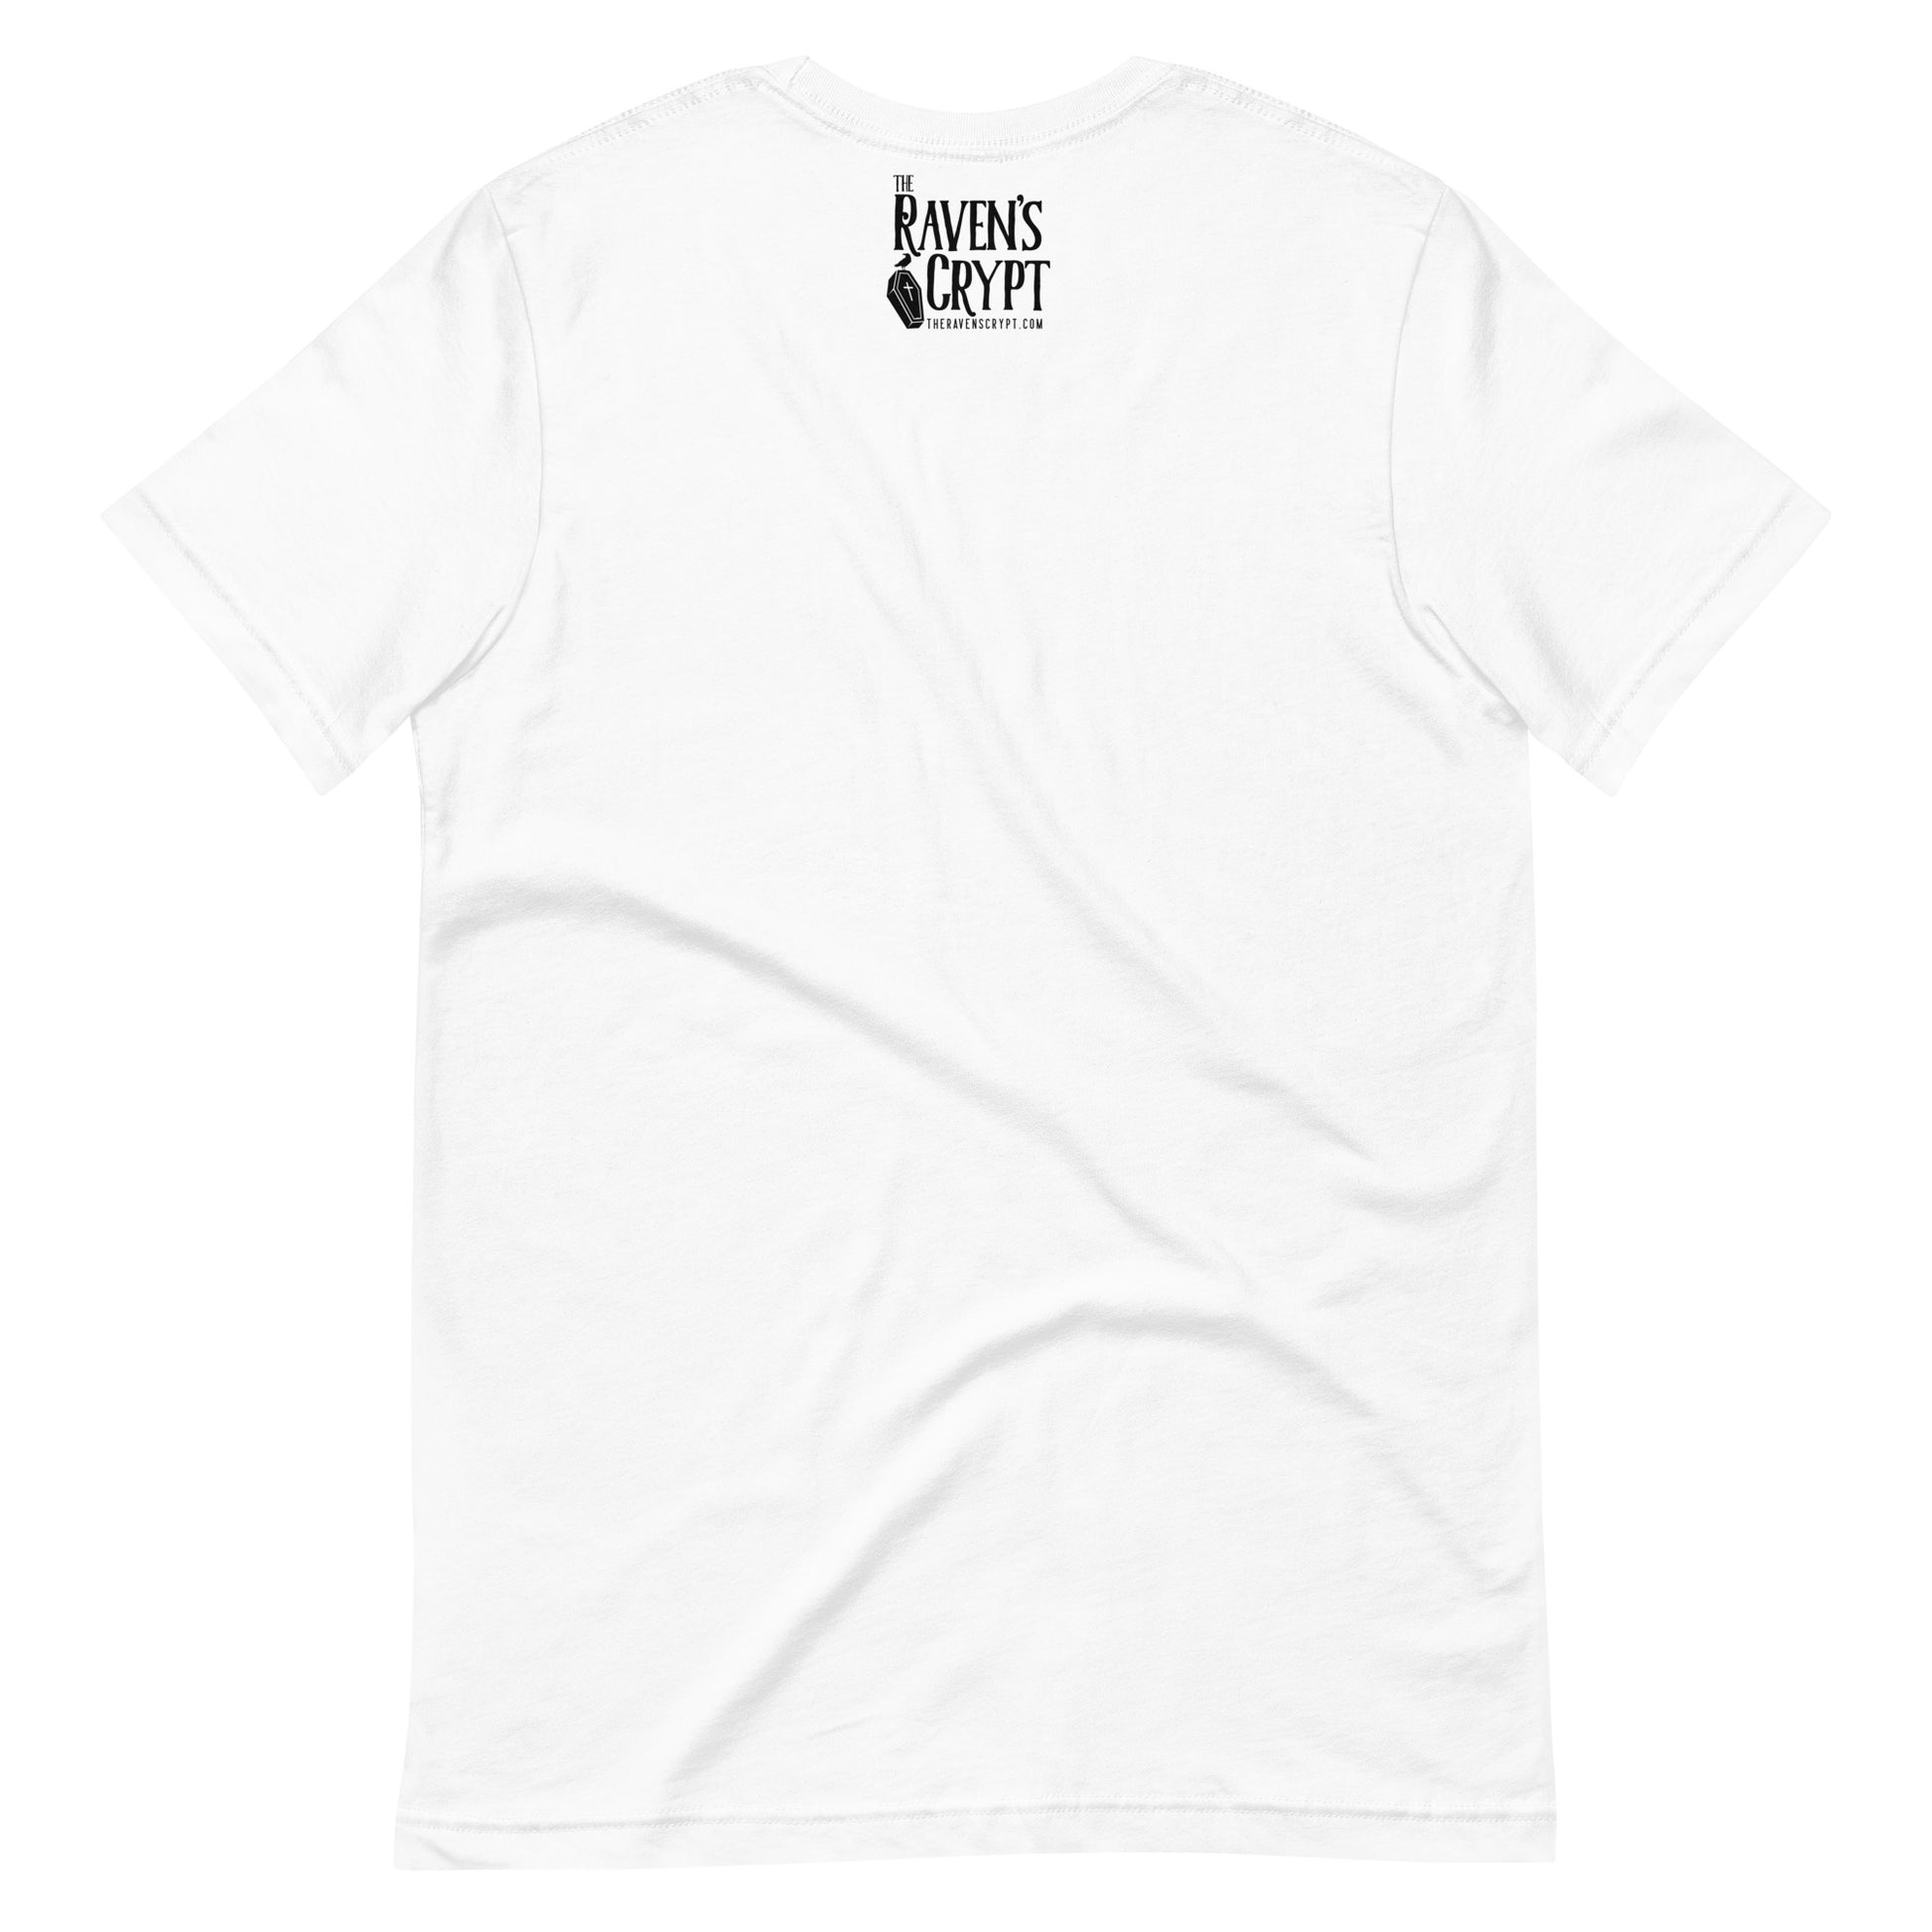 Women's Edgar Allan Poe "Nevermo" t-shirt - White Back